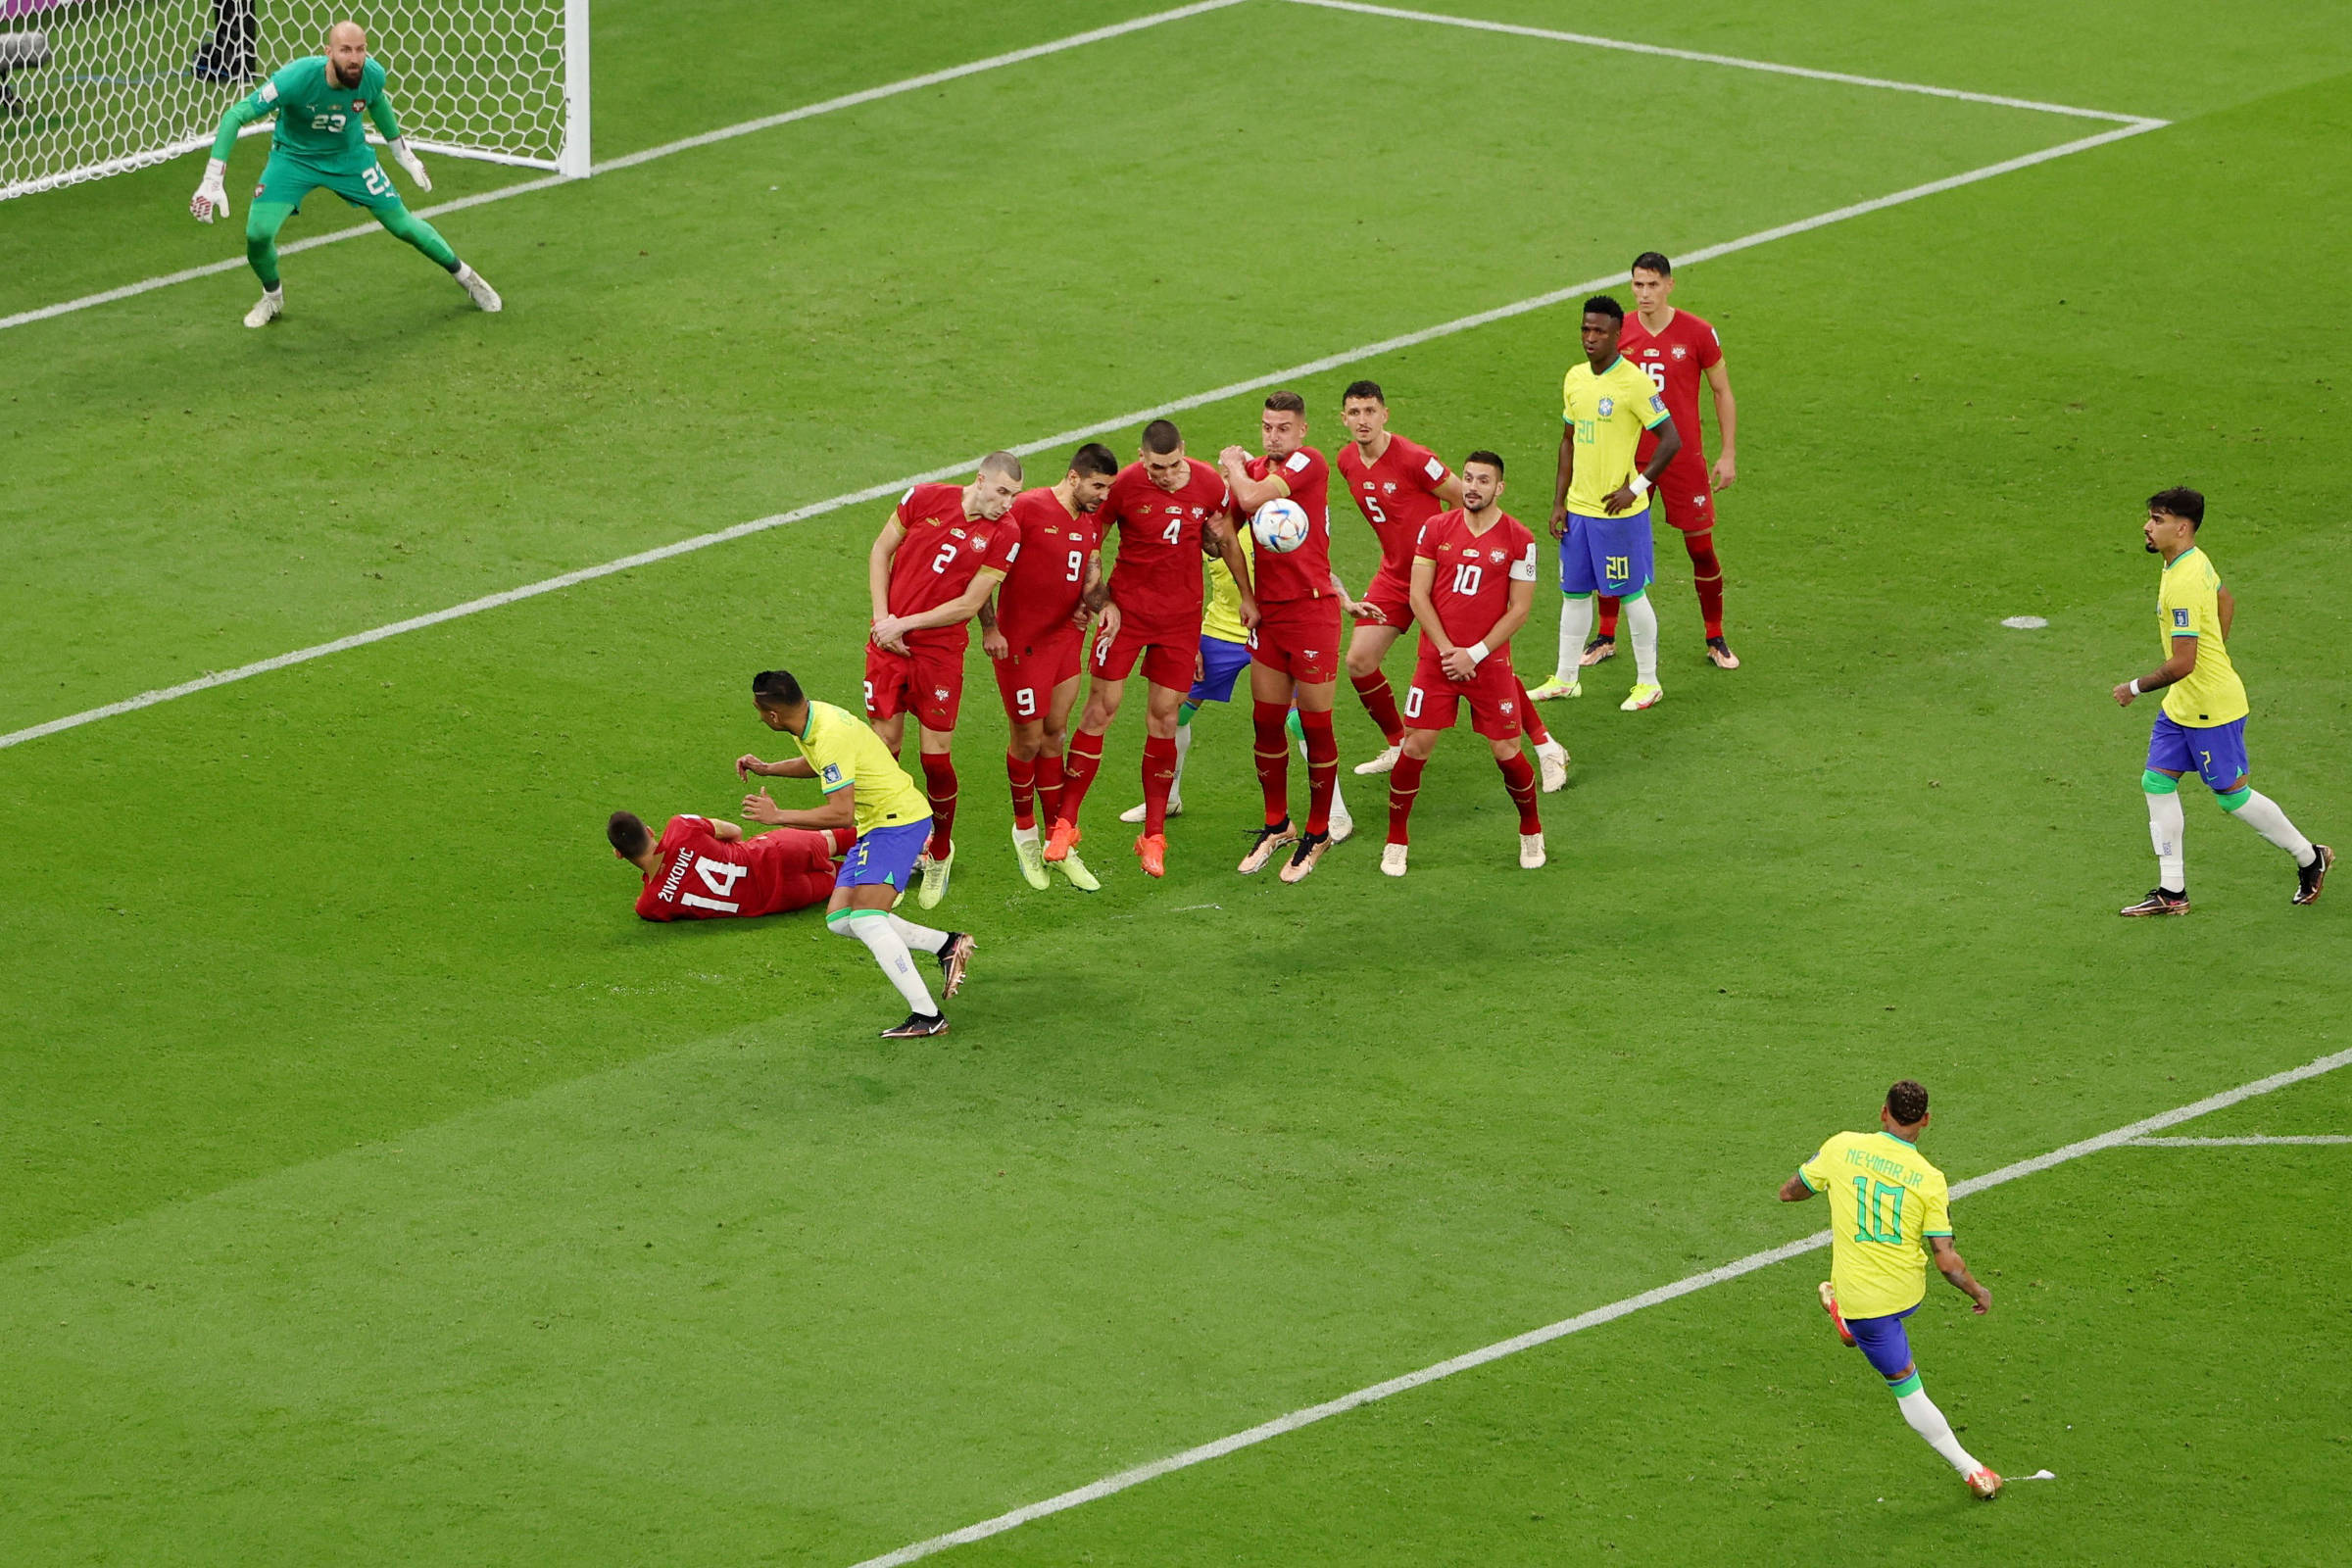 Copa do Mundo: por que jogador deitou no campo durante jogo do Brasil